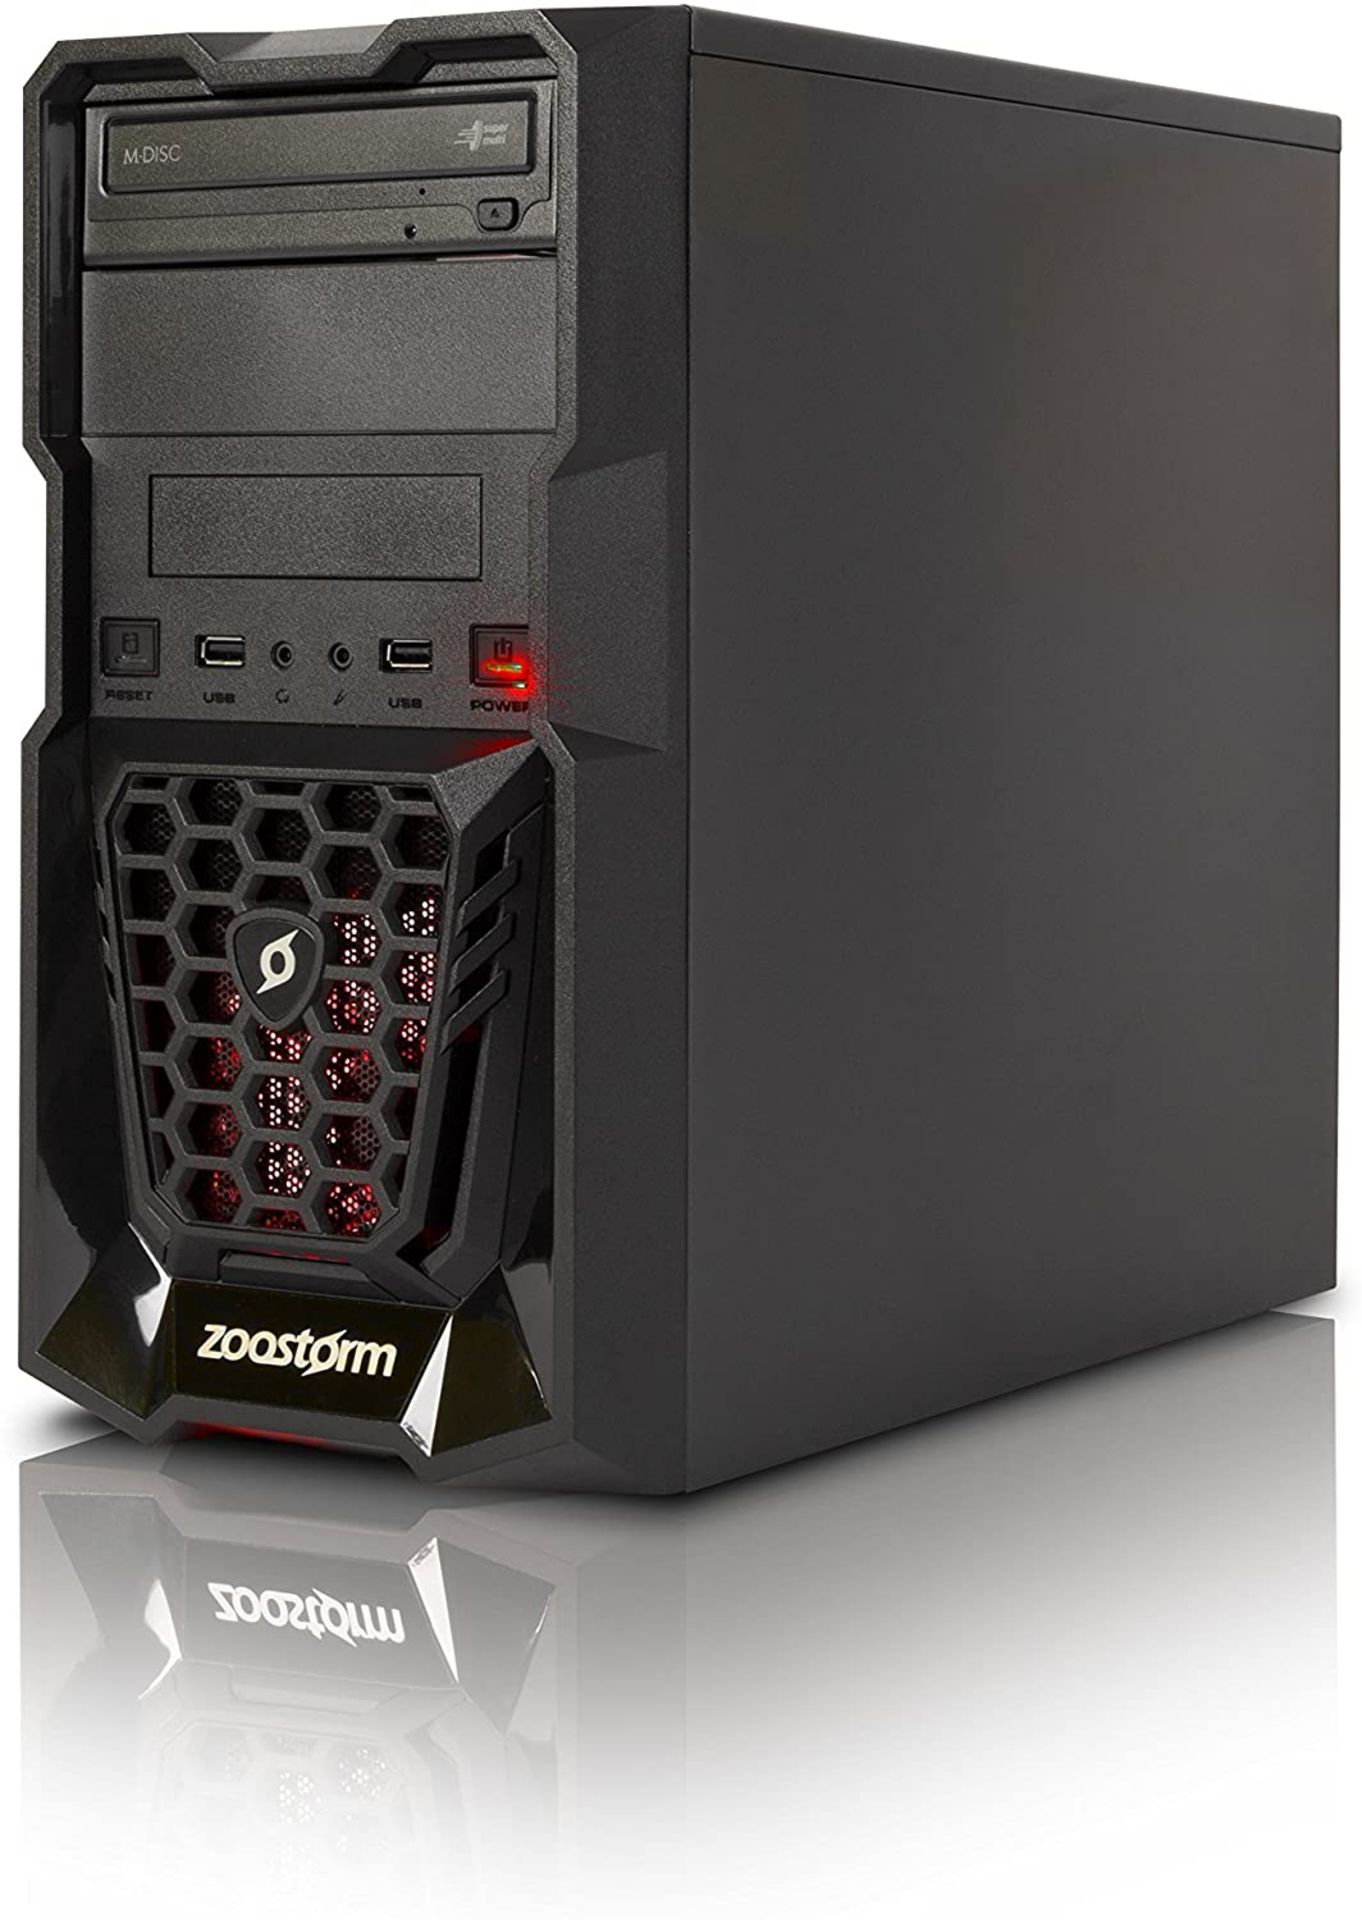 (69) 1 x Grade B - Zoostorm Quest Desktop PC - (Black) (AMD A8 7650K, 8 GB RAM, 1 TB HDD, Radeo... - Image 4 of 5